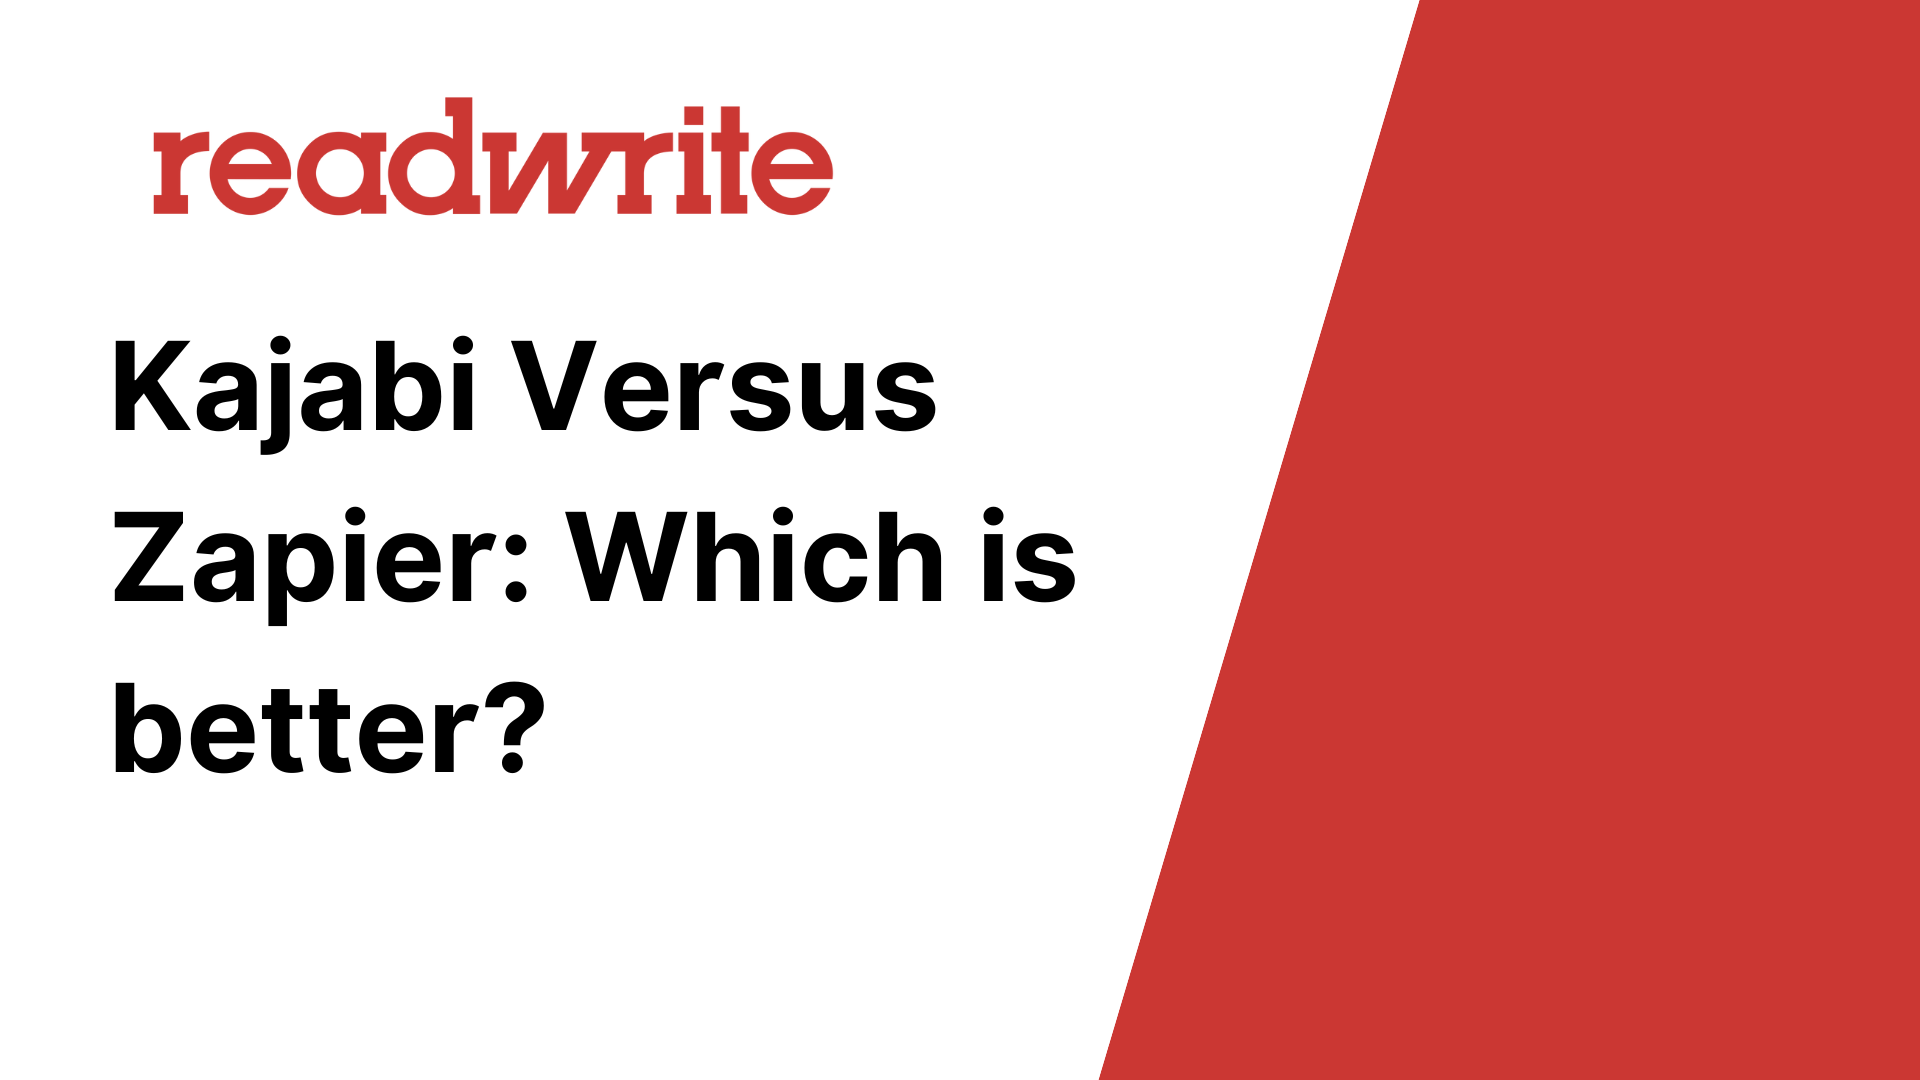 Kajabi Versus Zapier: Which is Better? - readwrite.com